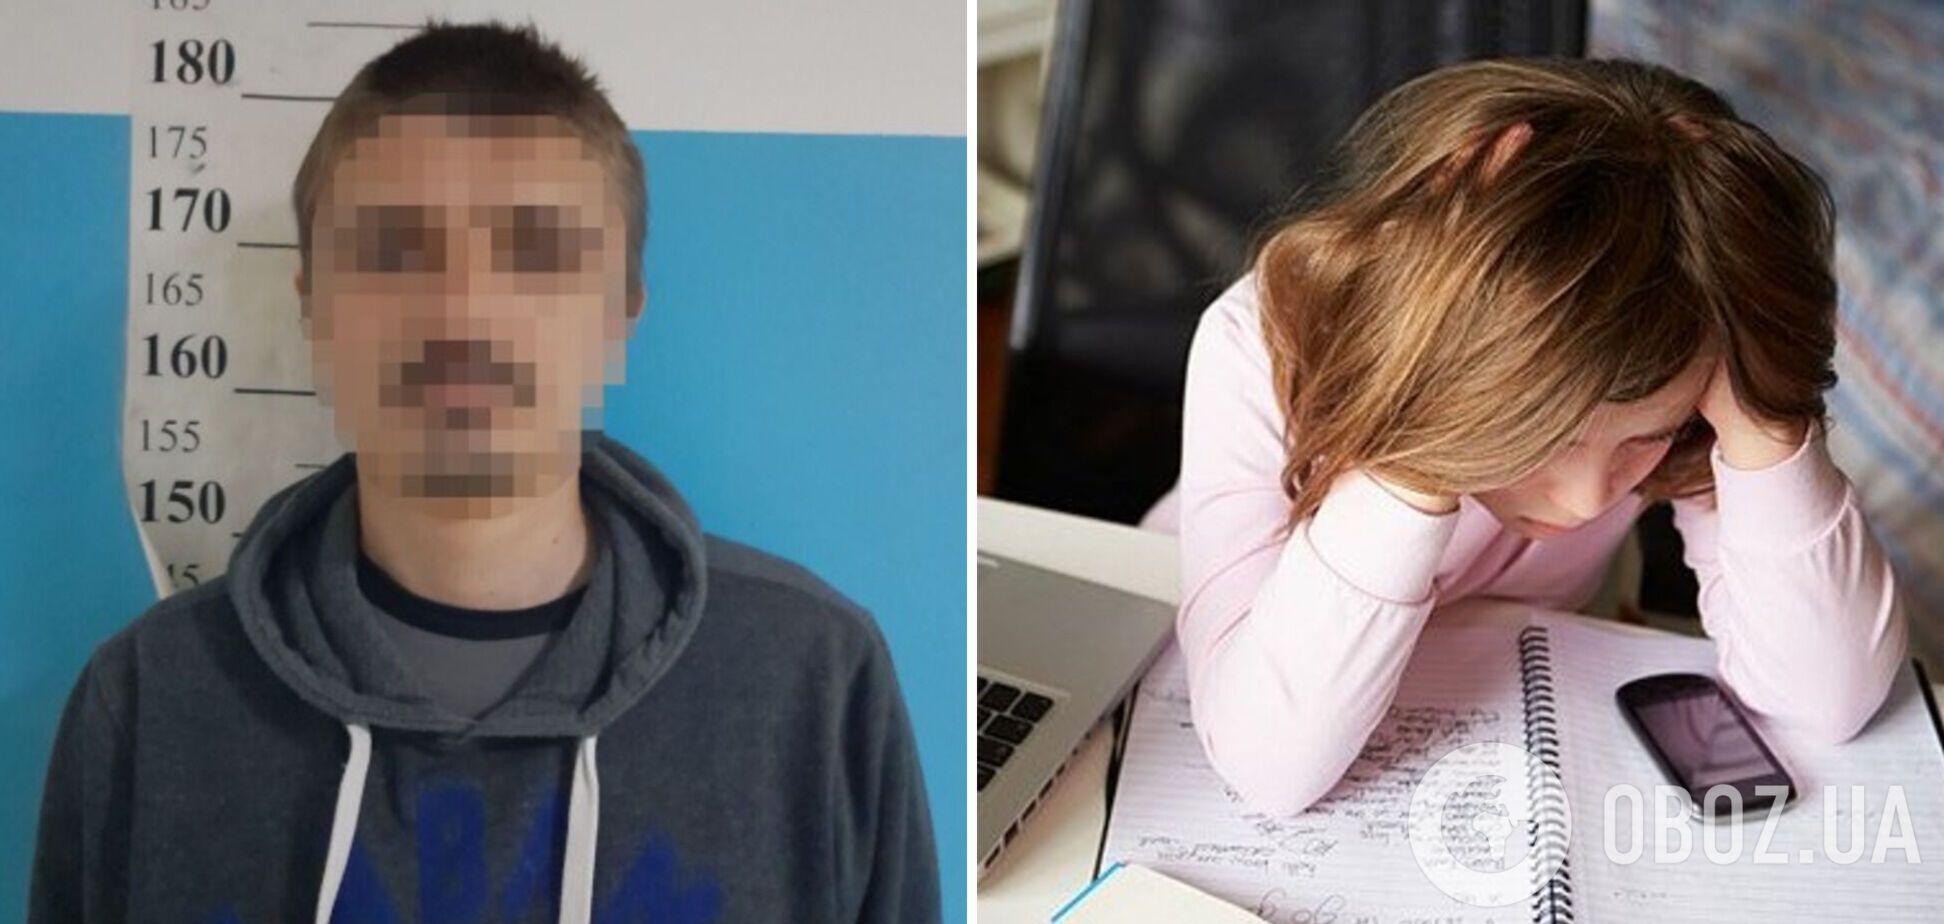 У Києві затримали чоловіка, який пропонував інтим 10-річній дівчинці. Фото